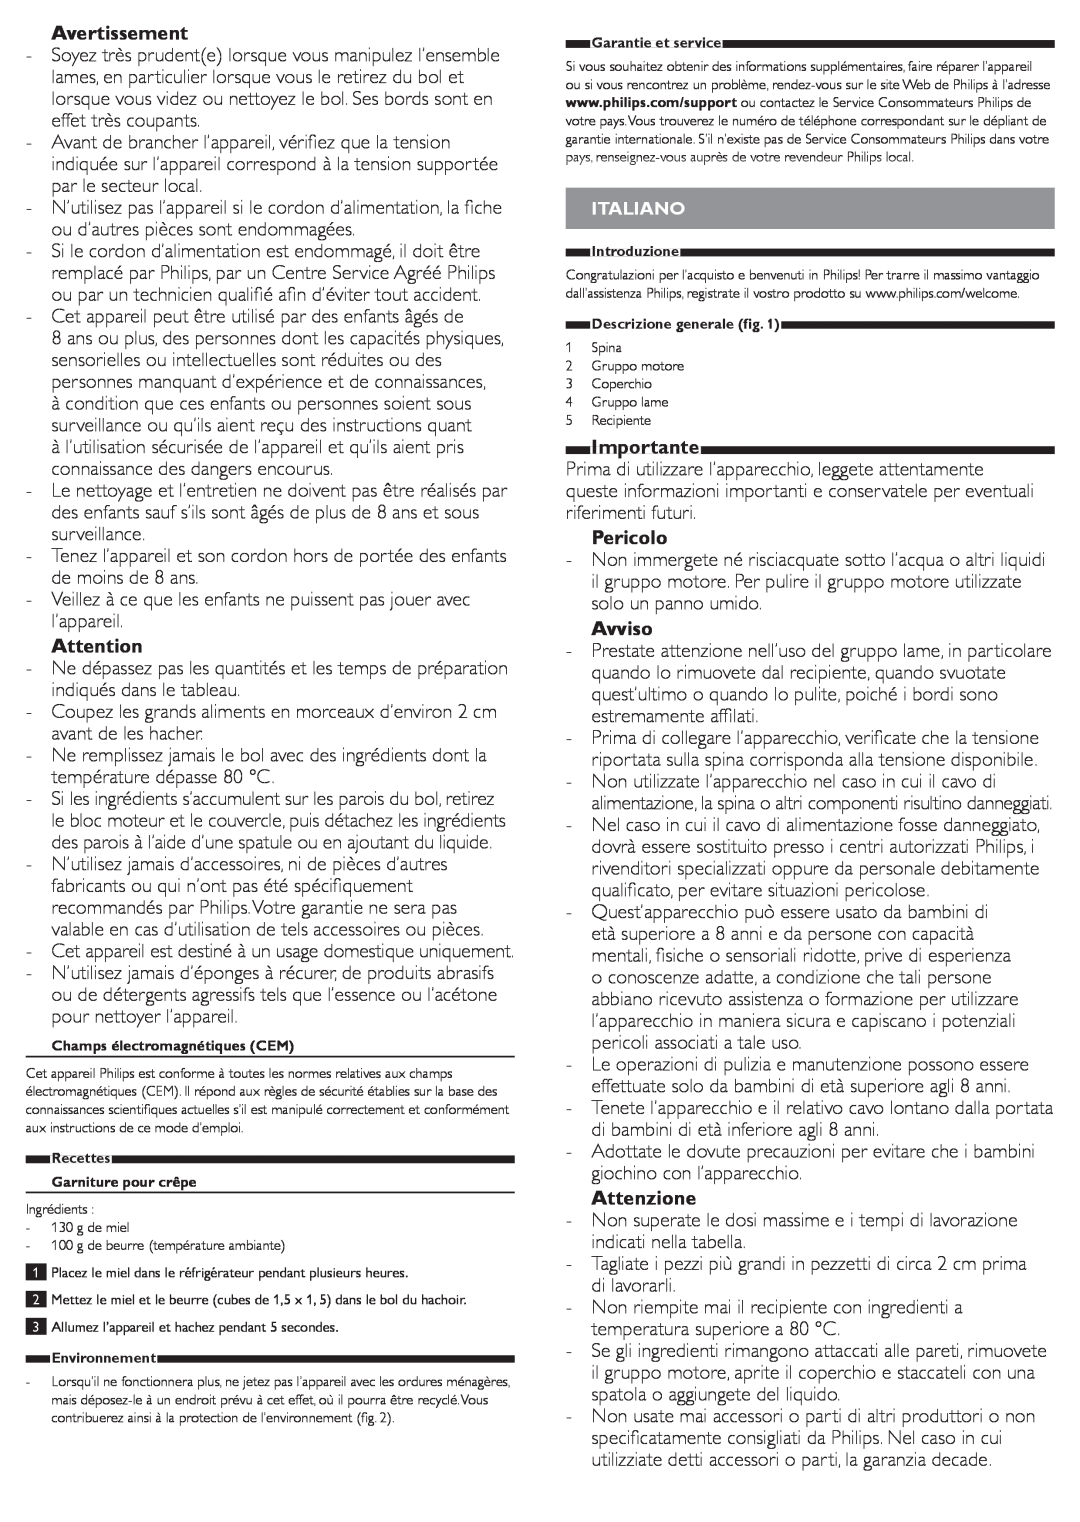 Philips HR1393 user manual Avertissement, Pericolo, Avviso, Attenzione, Importante 